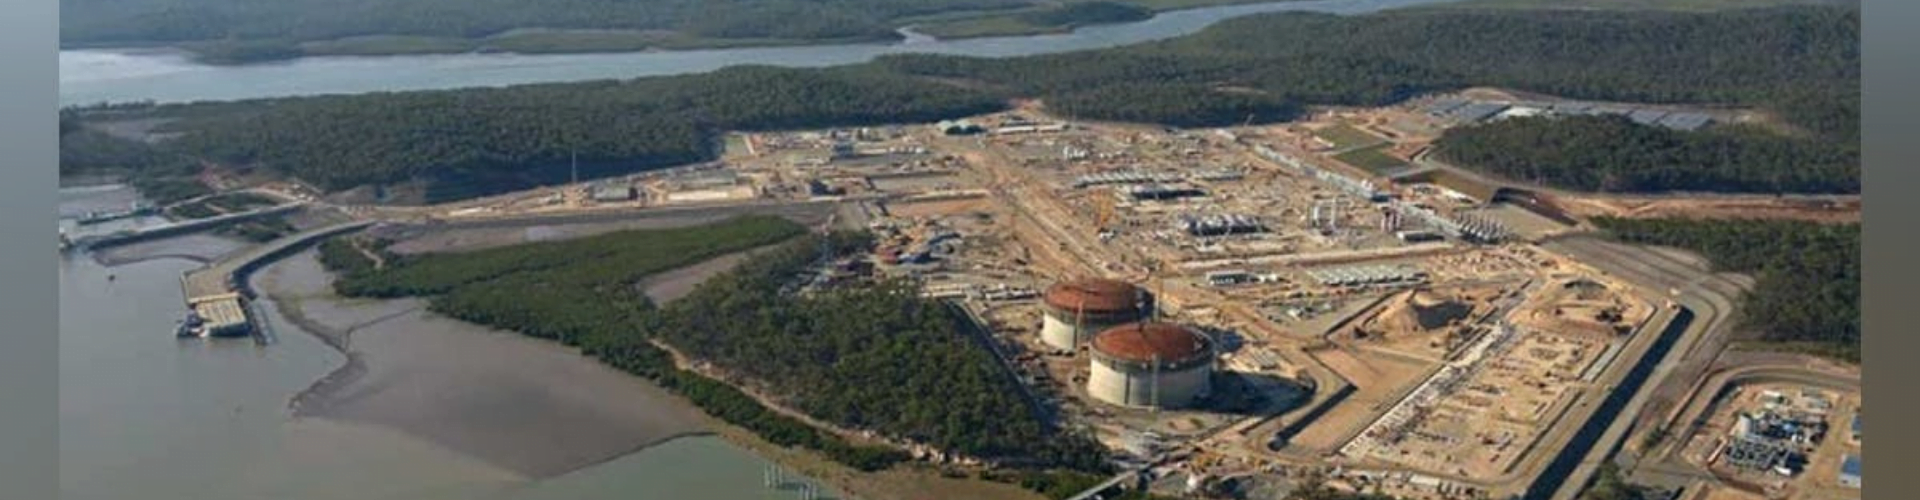 Australia Pacific LNG Project